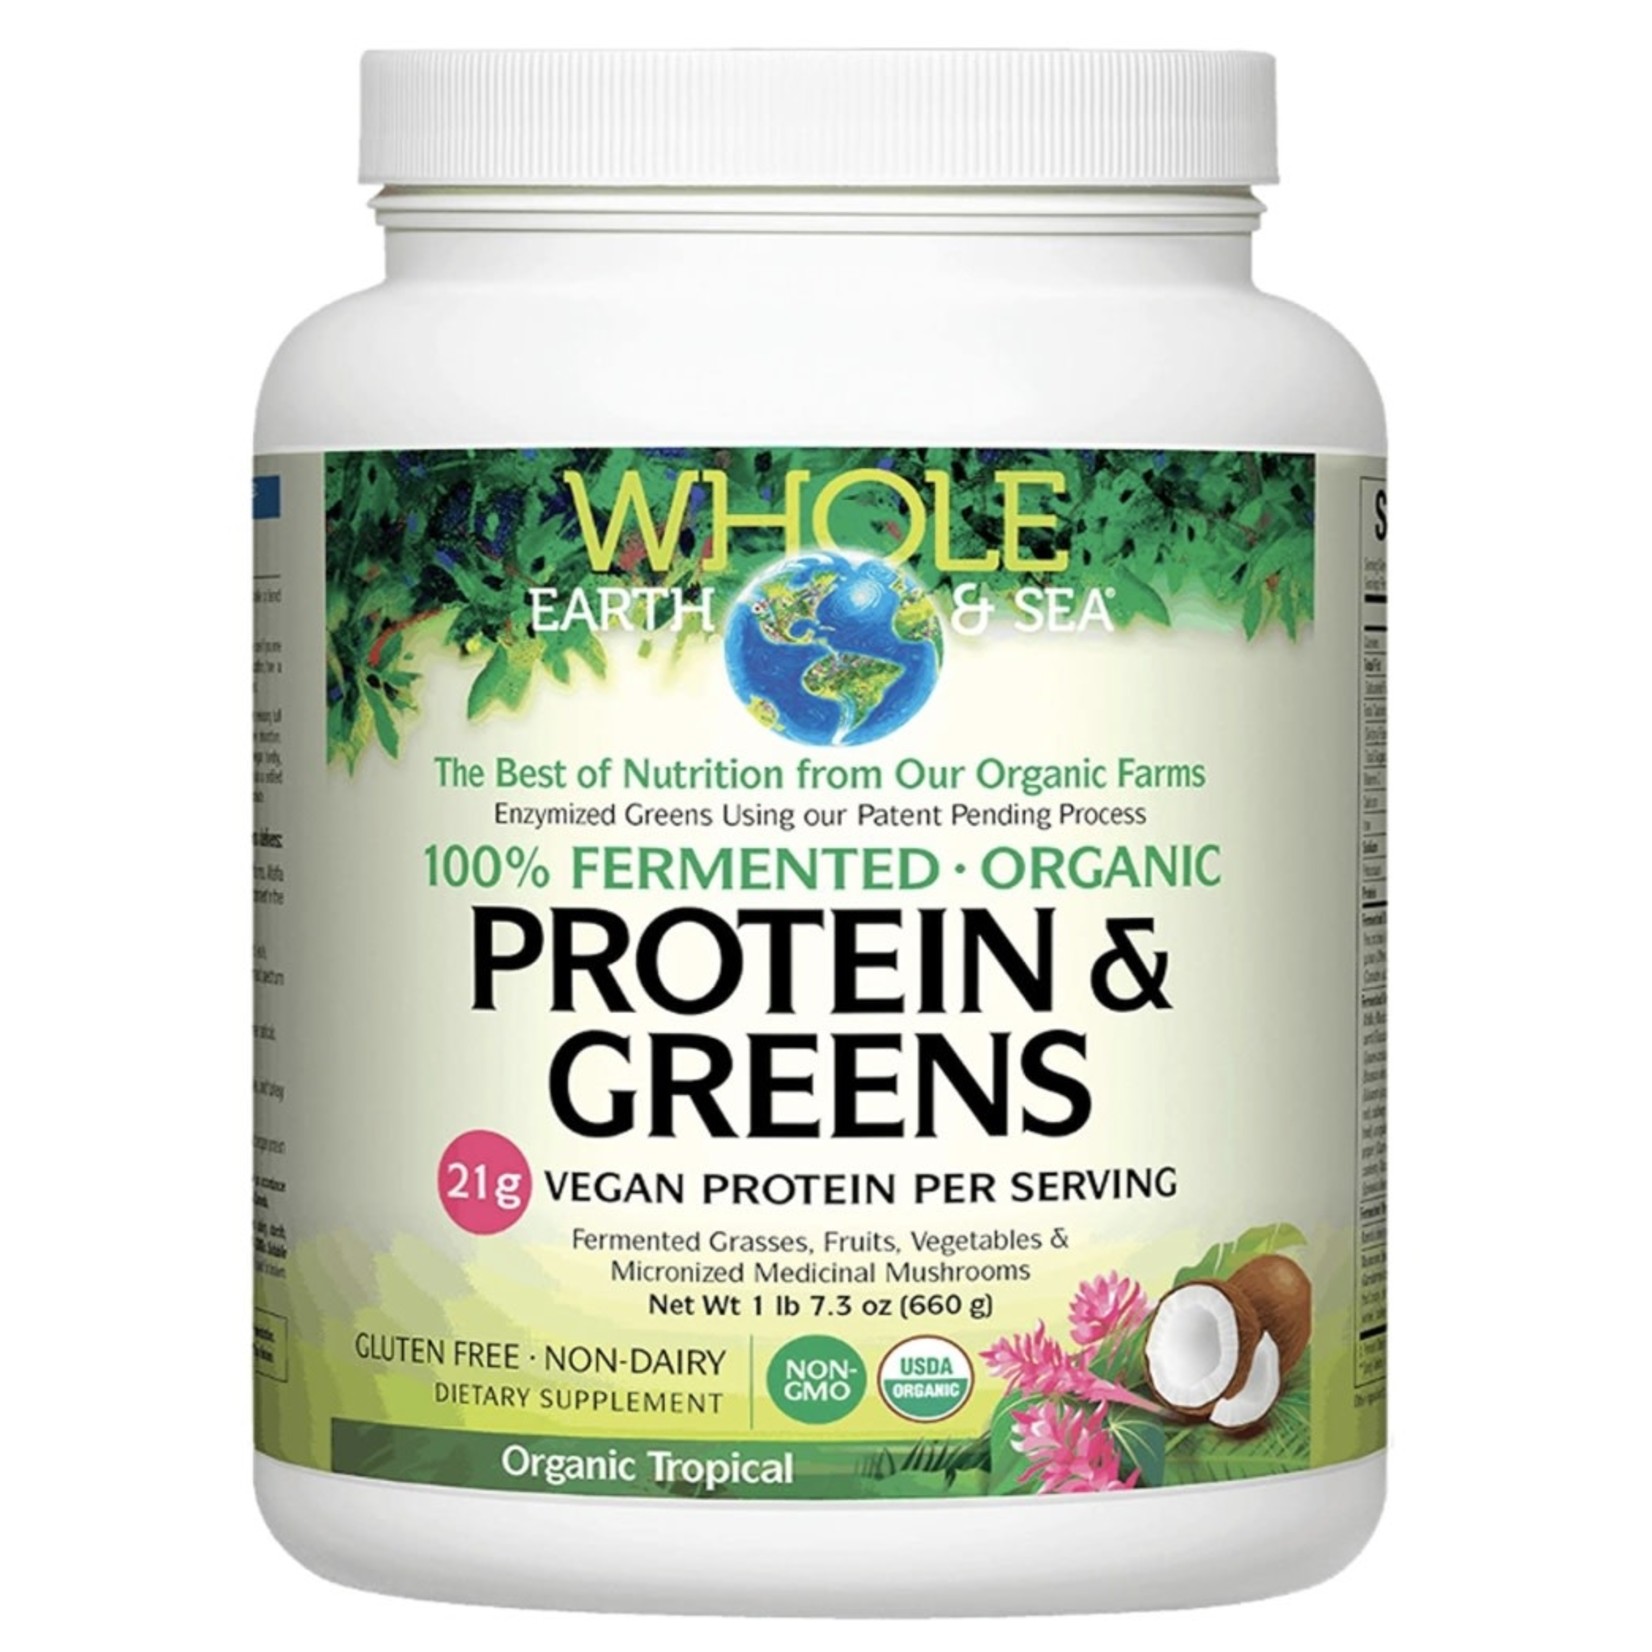 Whole Earth & Sea Whole Earth & Sea 100% Fermented Protein & Greens - Tropical